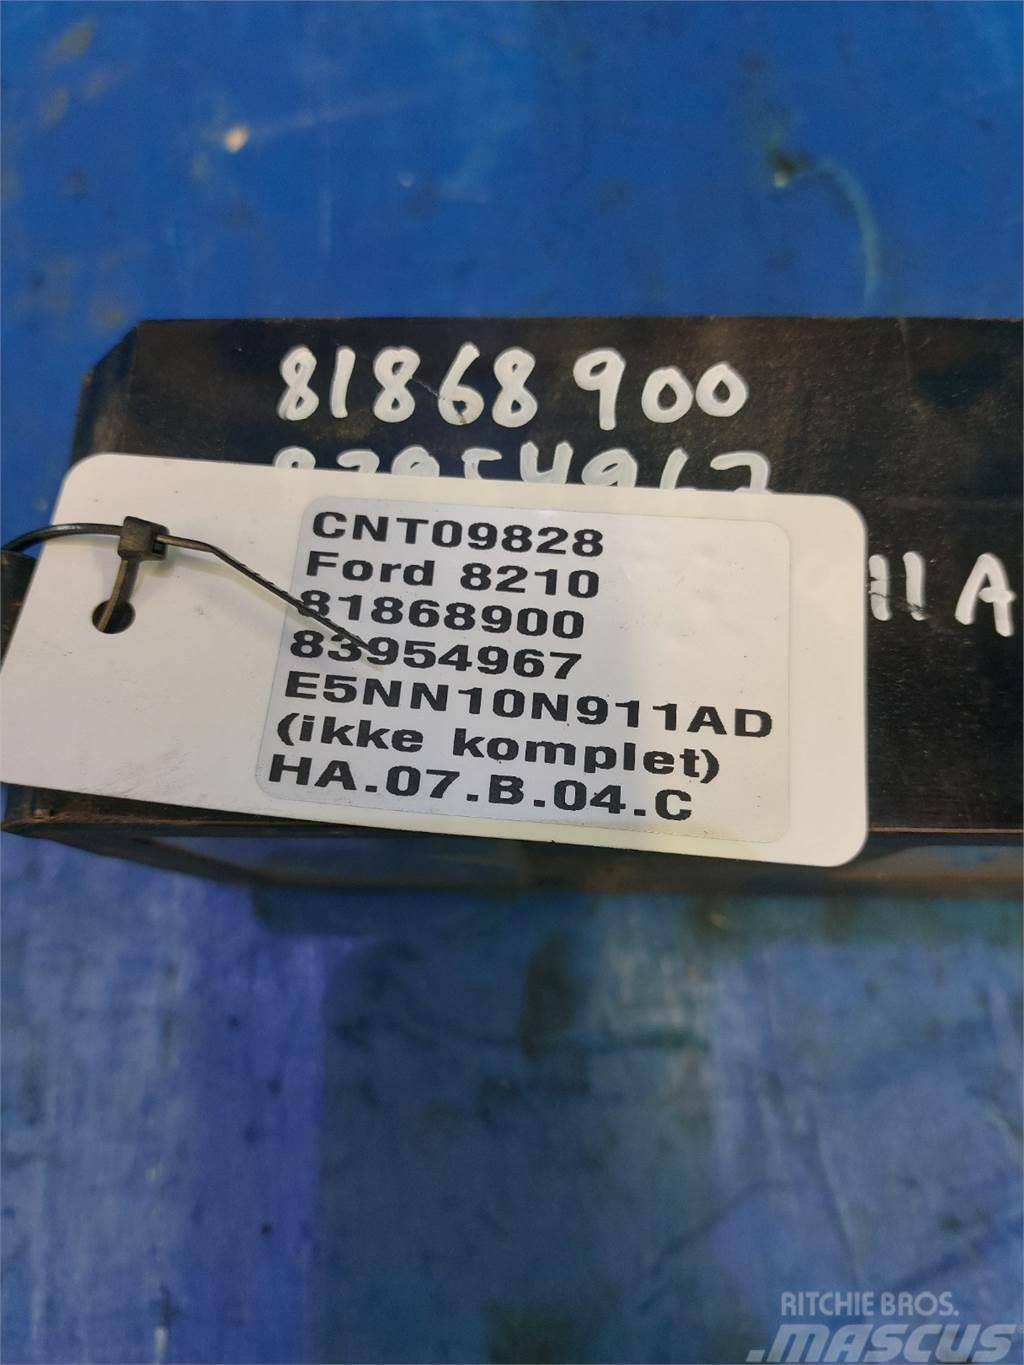 Ford 8210 Componenti elettroniche